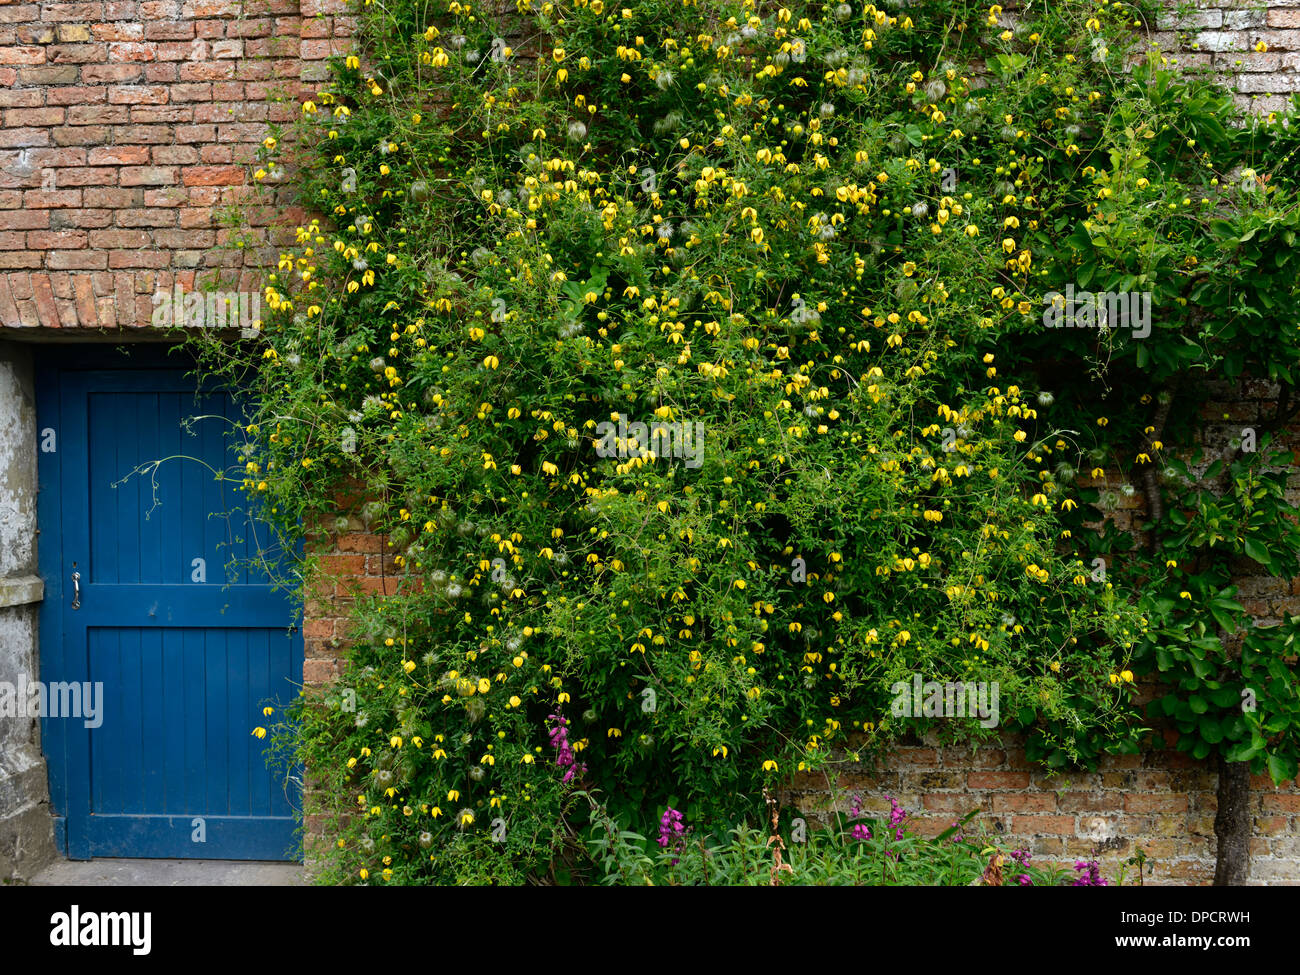 Clematis tangutica vigorosa escalada Escalador subir flor amarilla floración floración planta cubierta de pared puerta azul jardinería Foto de stock